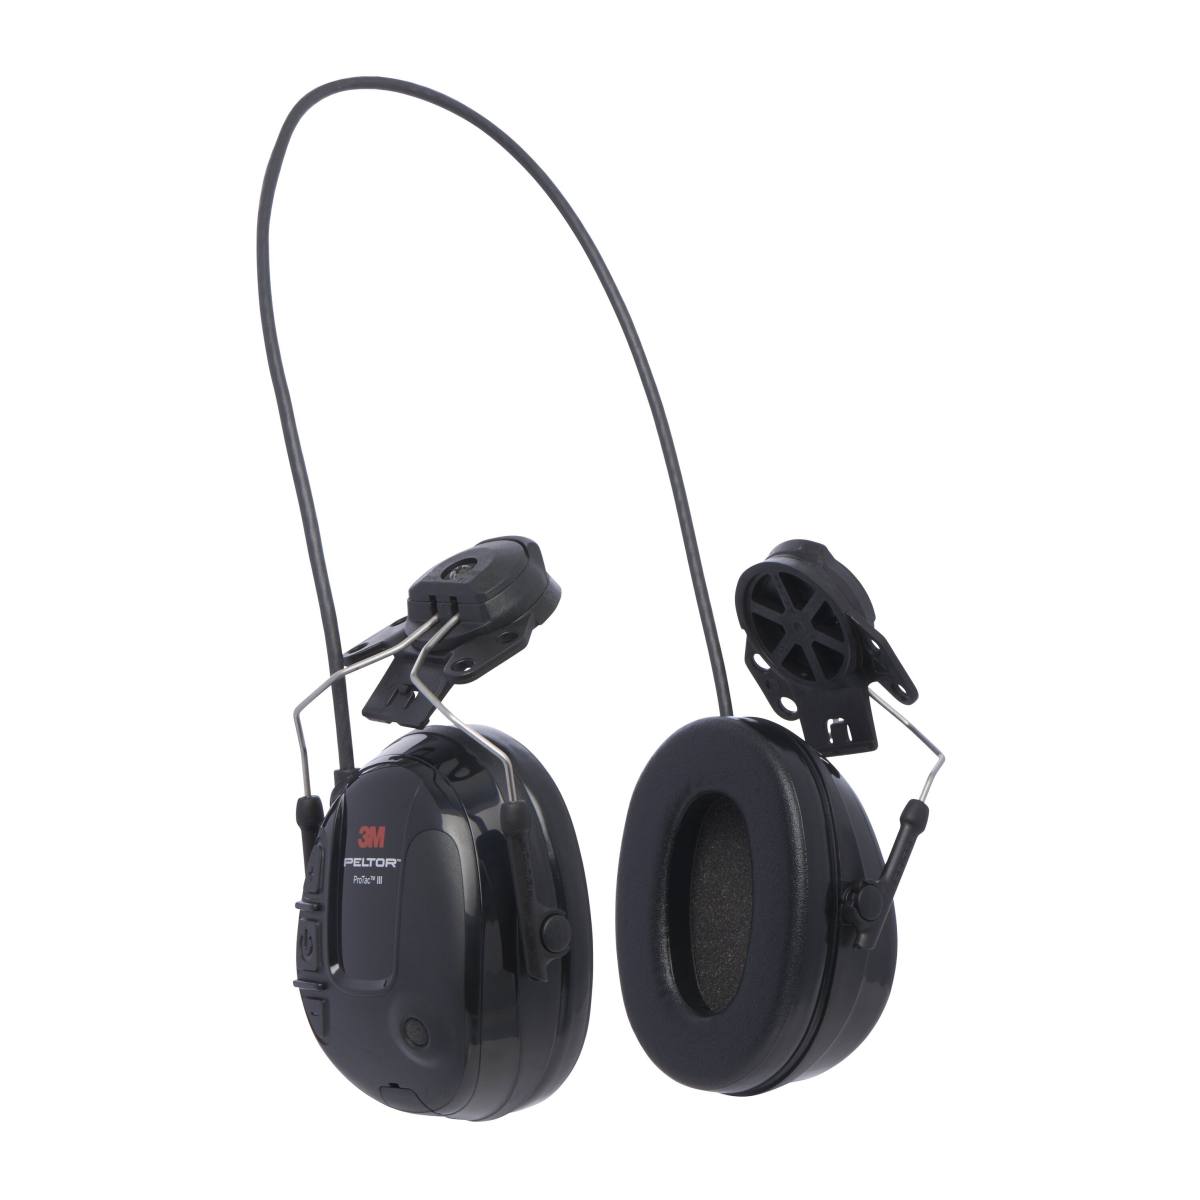 Cuffie di protezione dell'udito 3M Peltor ProTac III Slim, nere, versione per casco, con tecnologia di attenuazione attiva e dipendente dal livello per la percezione del rumore ambientale, SNR = 25 dB, nere